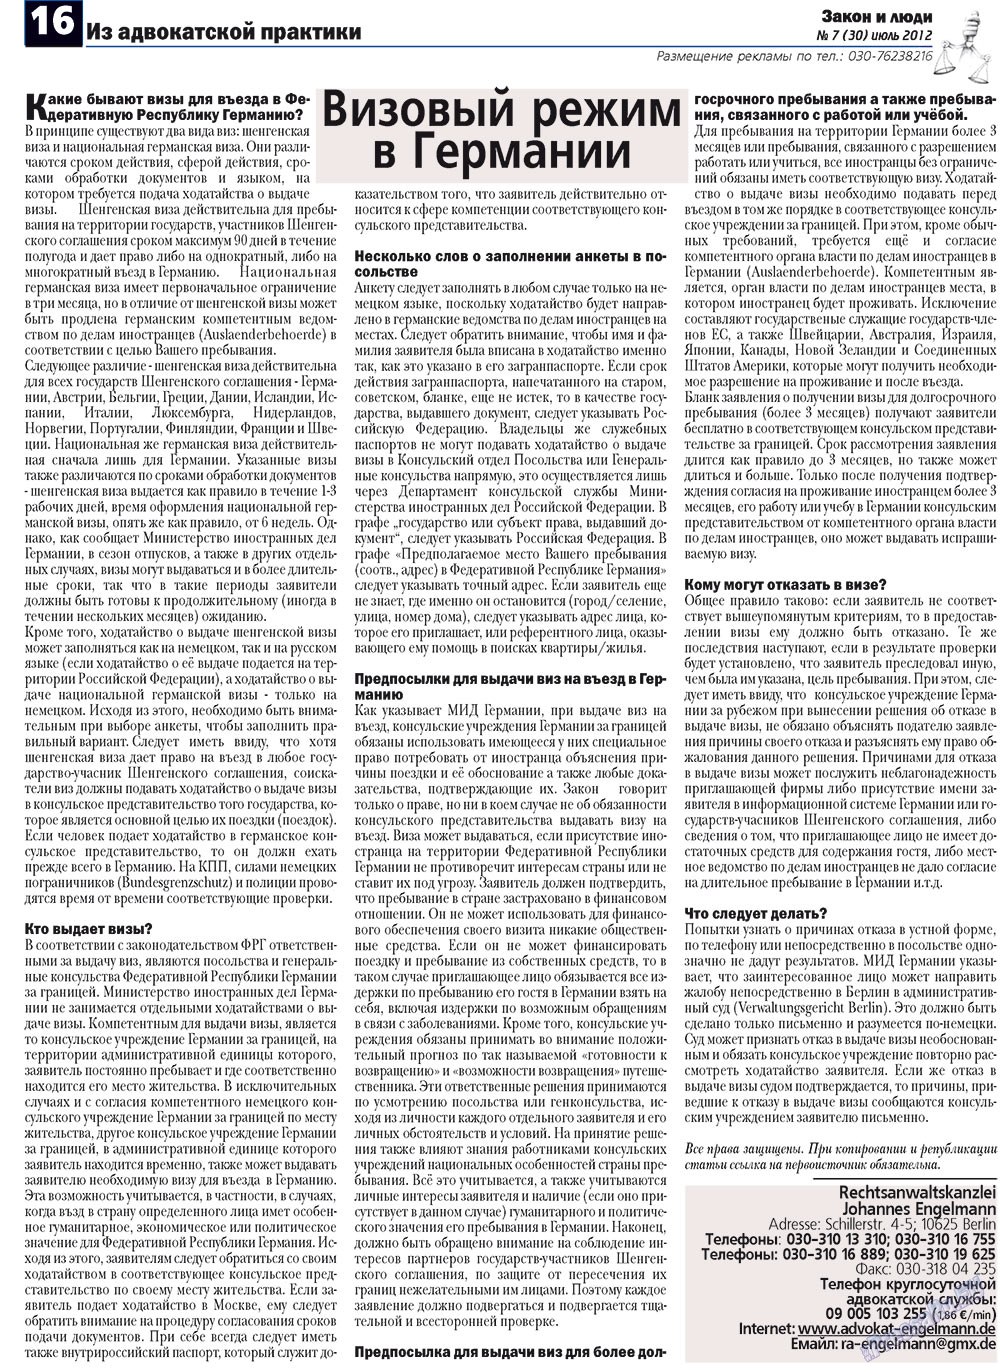 Закон и люди, газета. 2012 №7 стр.16